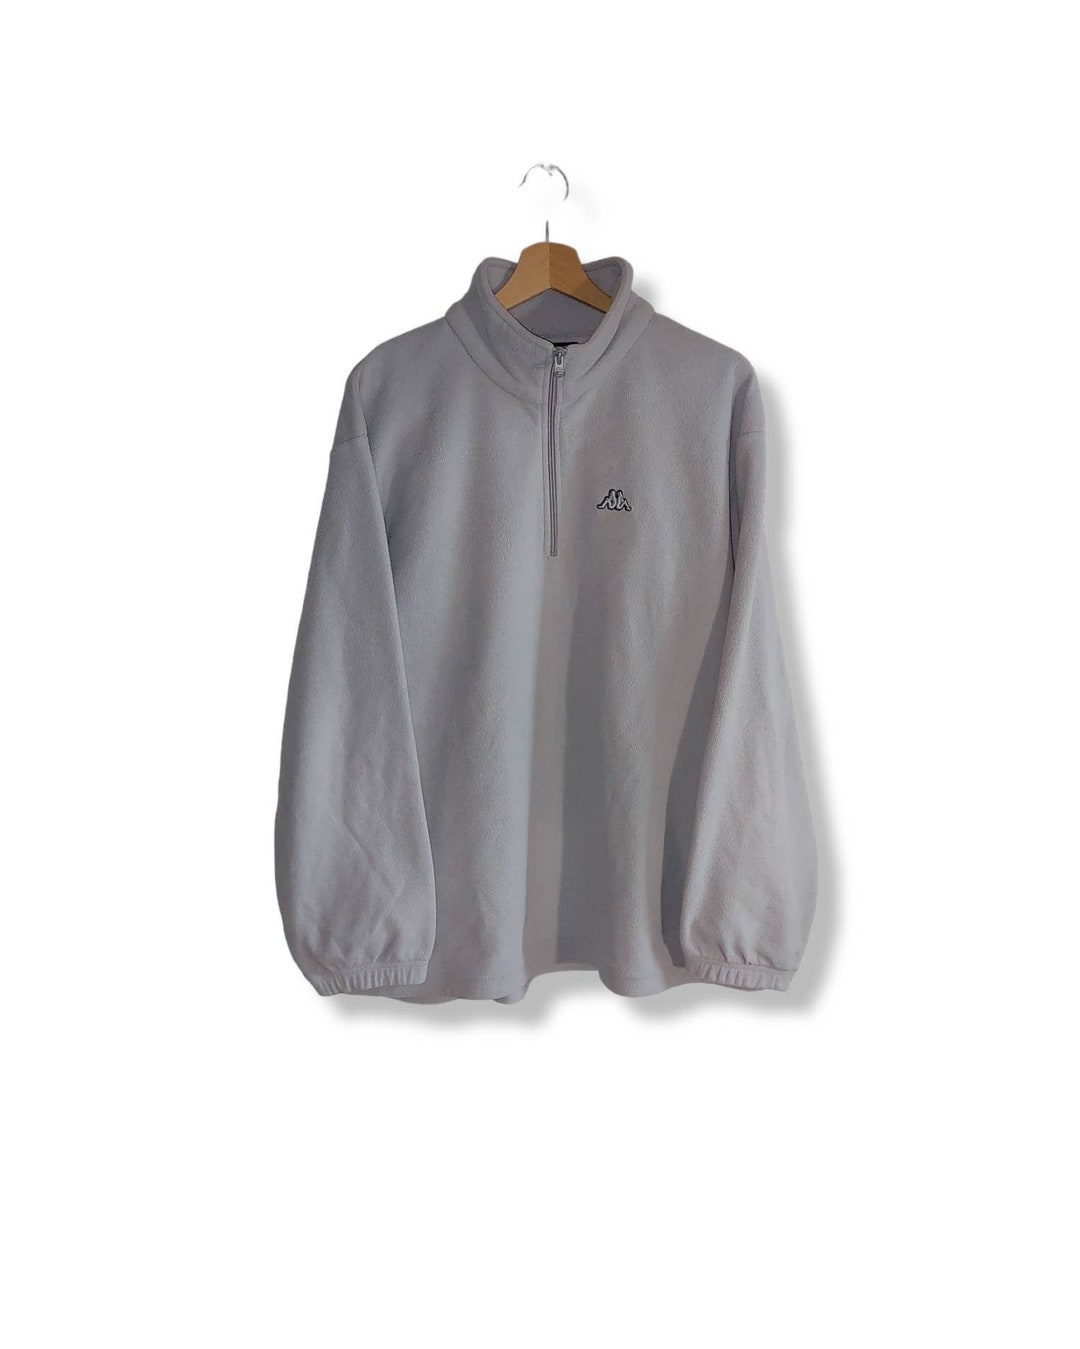 Vintage Kappa Quarter Zip Fleece Sweatshirt Size L 90s -  Ireland